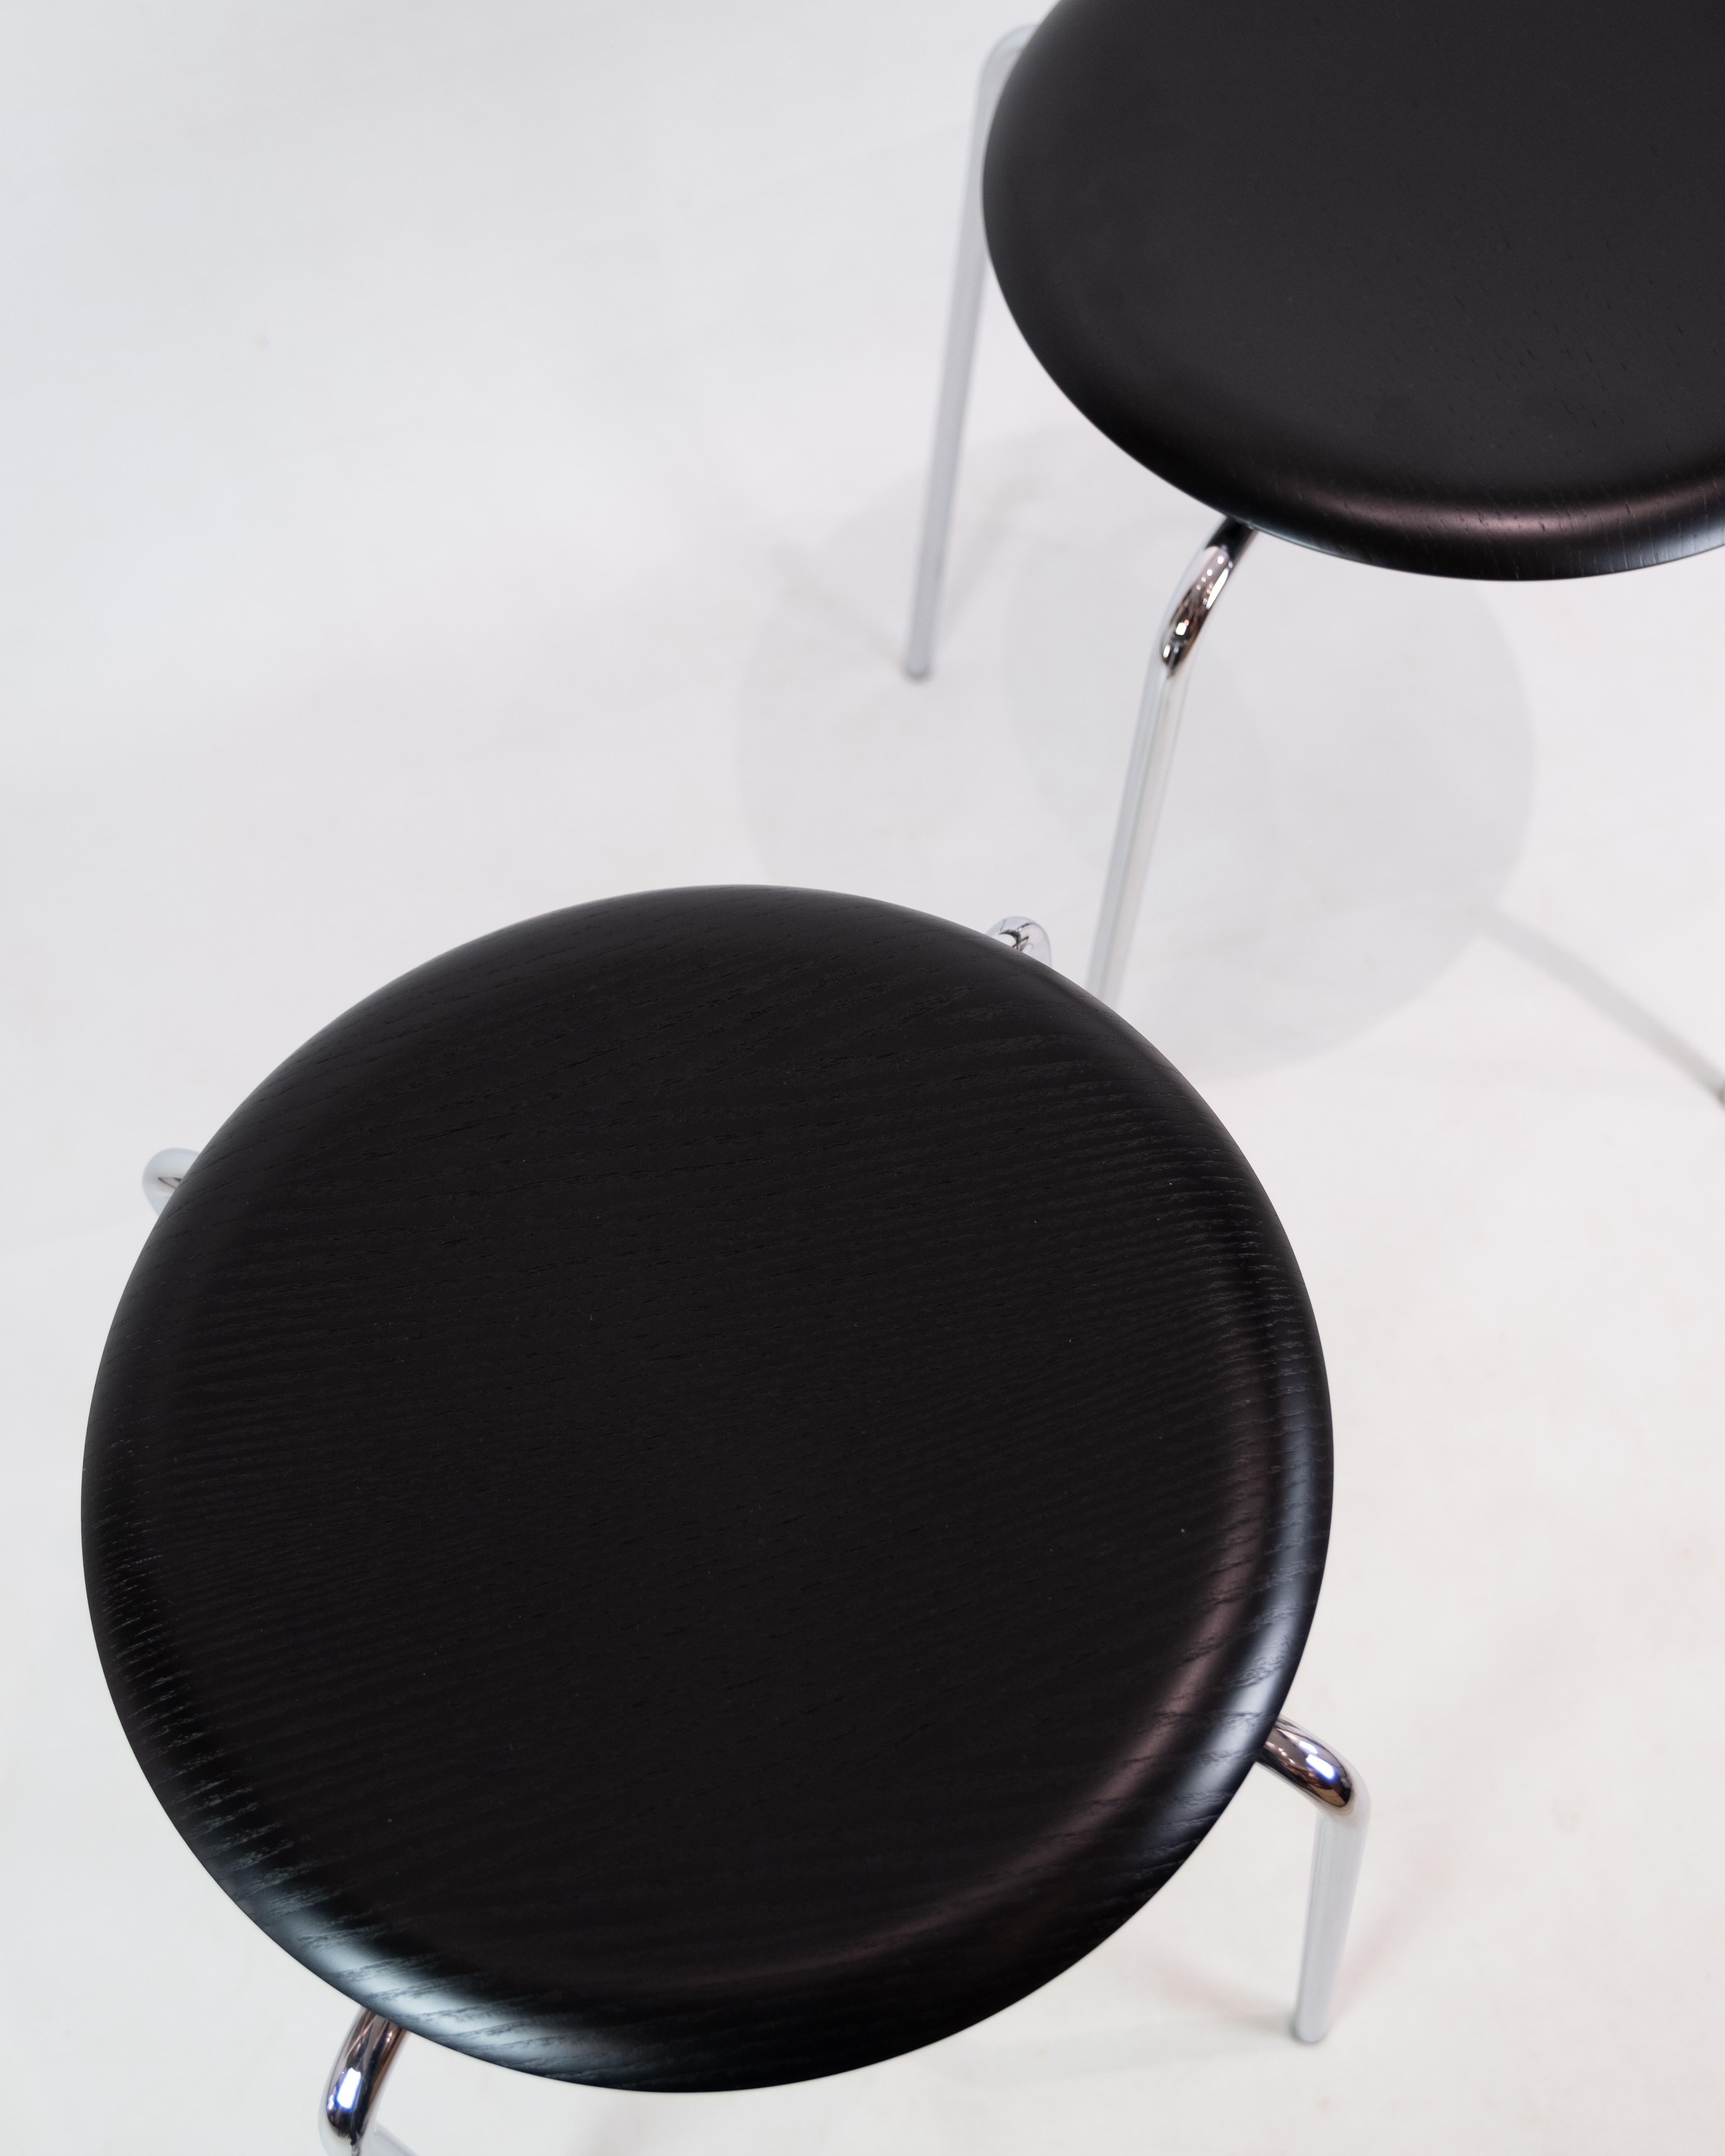 Der von Arne Jacobsen für Fritz Hansen entworfene Hocker Dot ist ein zeitloses und funktionelles Möbelstück, das 1970 mit vier Beinen aktualisiert wurde, wie wir es heute kennen.

Der moderne Stil und das schlichte Design machen den Hocker Dot